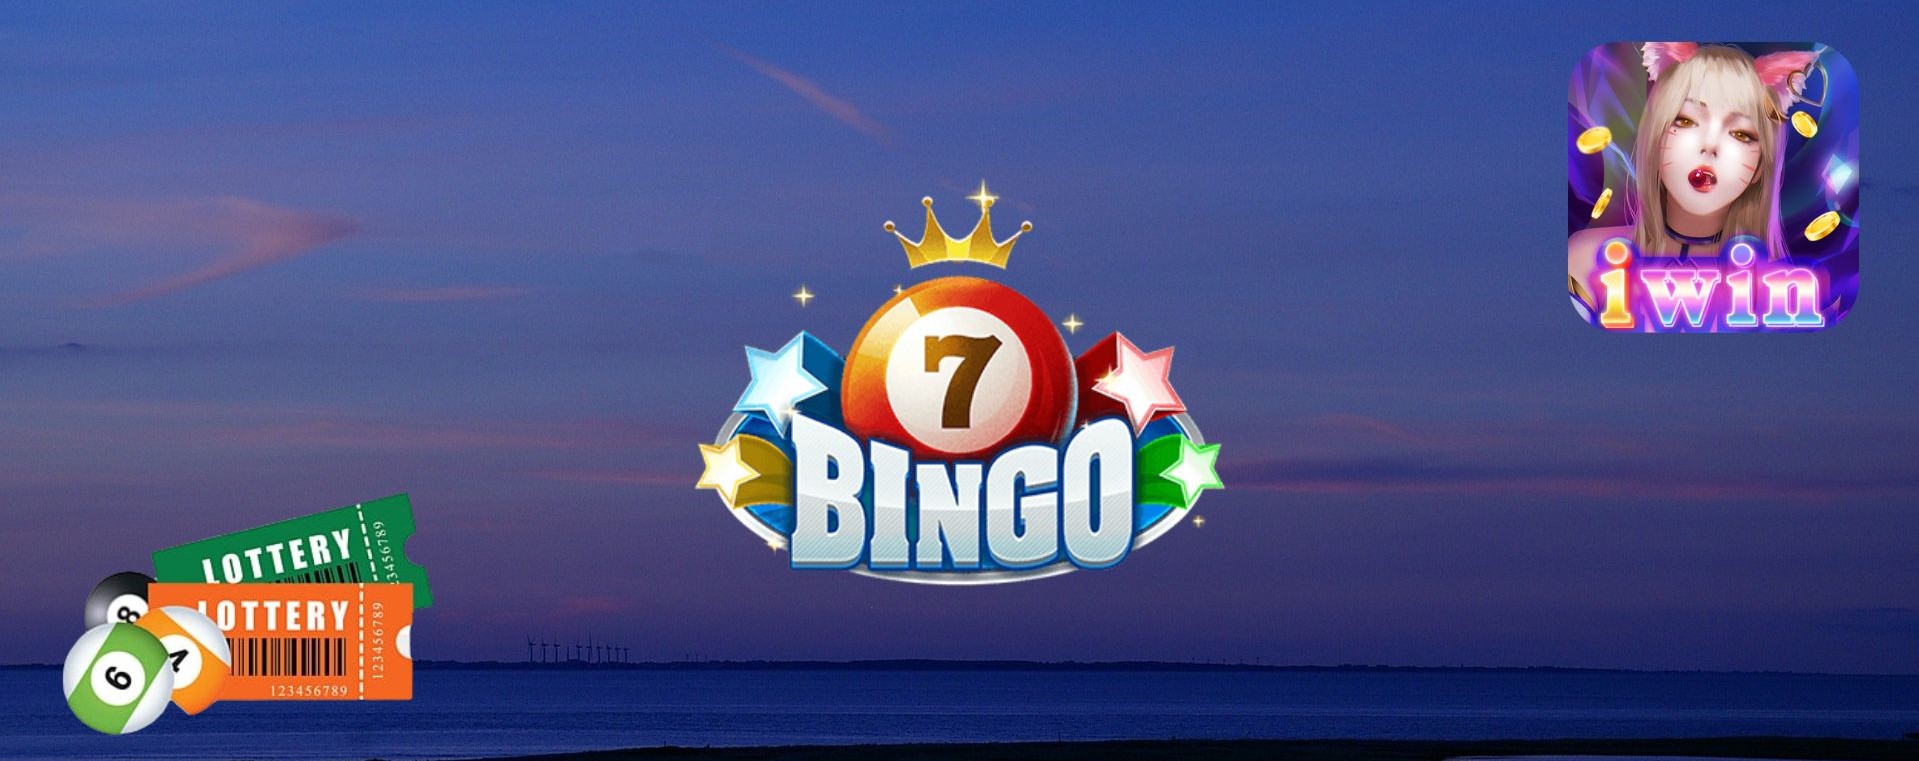 Sơ lược về website cá cược Bingo trên IWIN